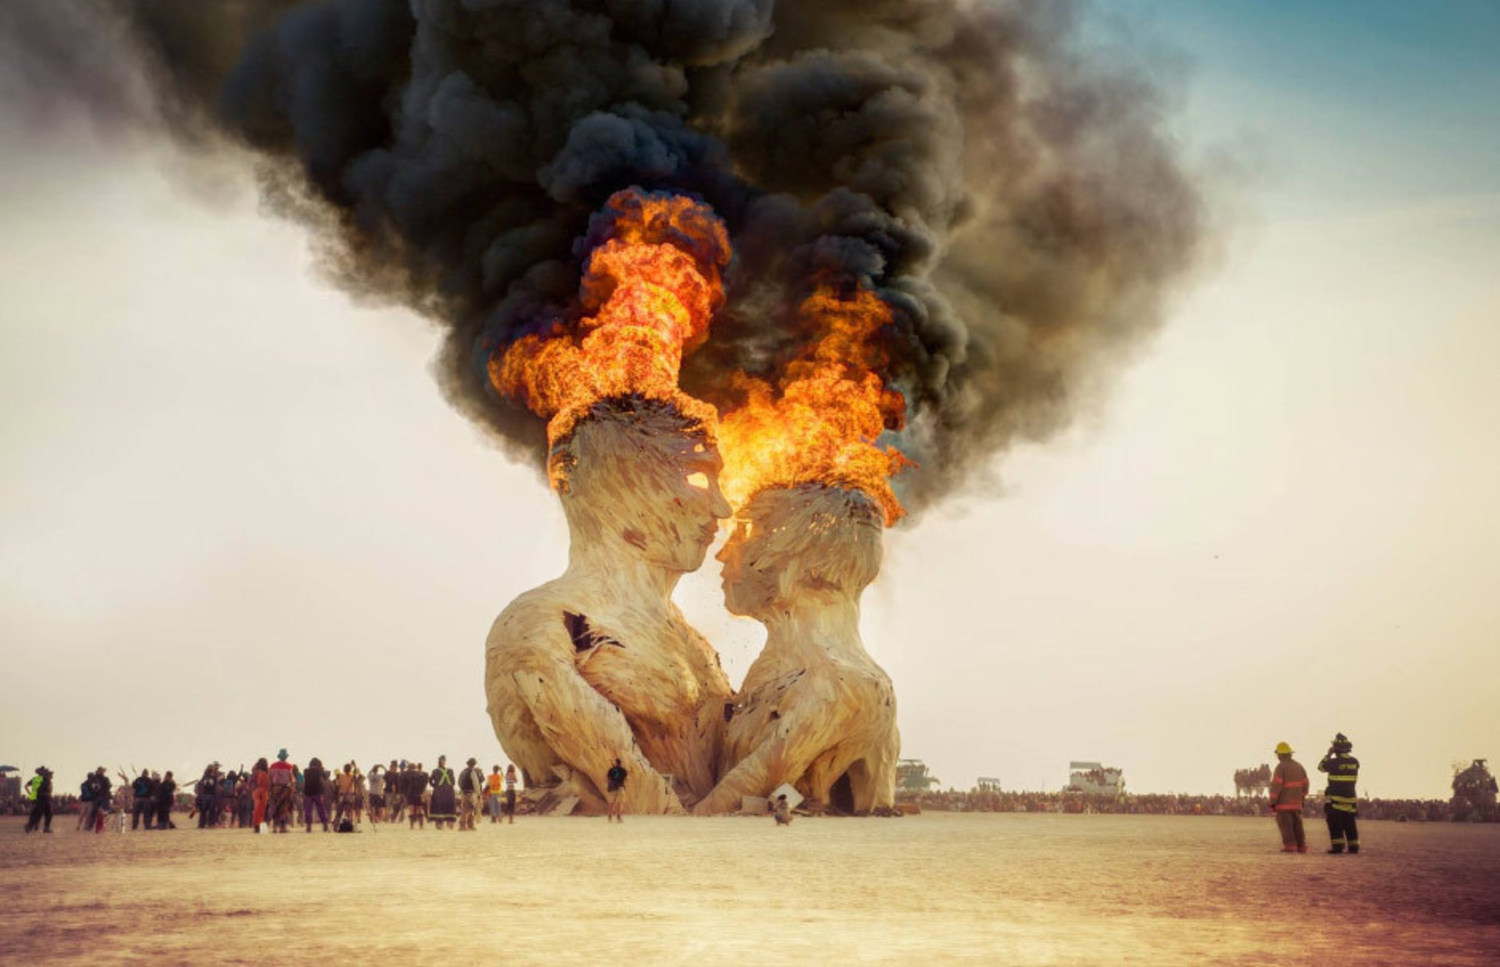 Burning Man (burning man) in the Black Rock Desert